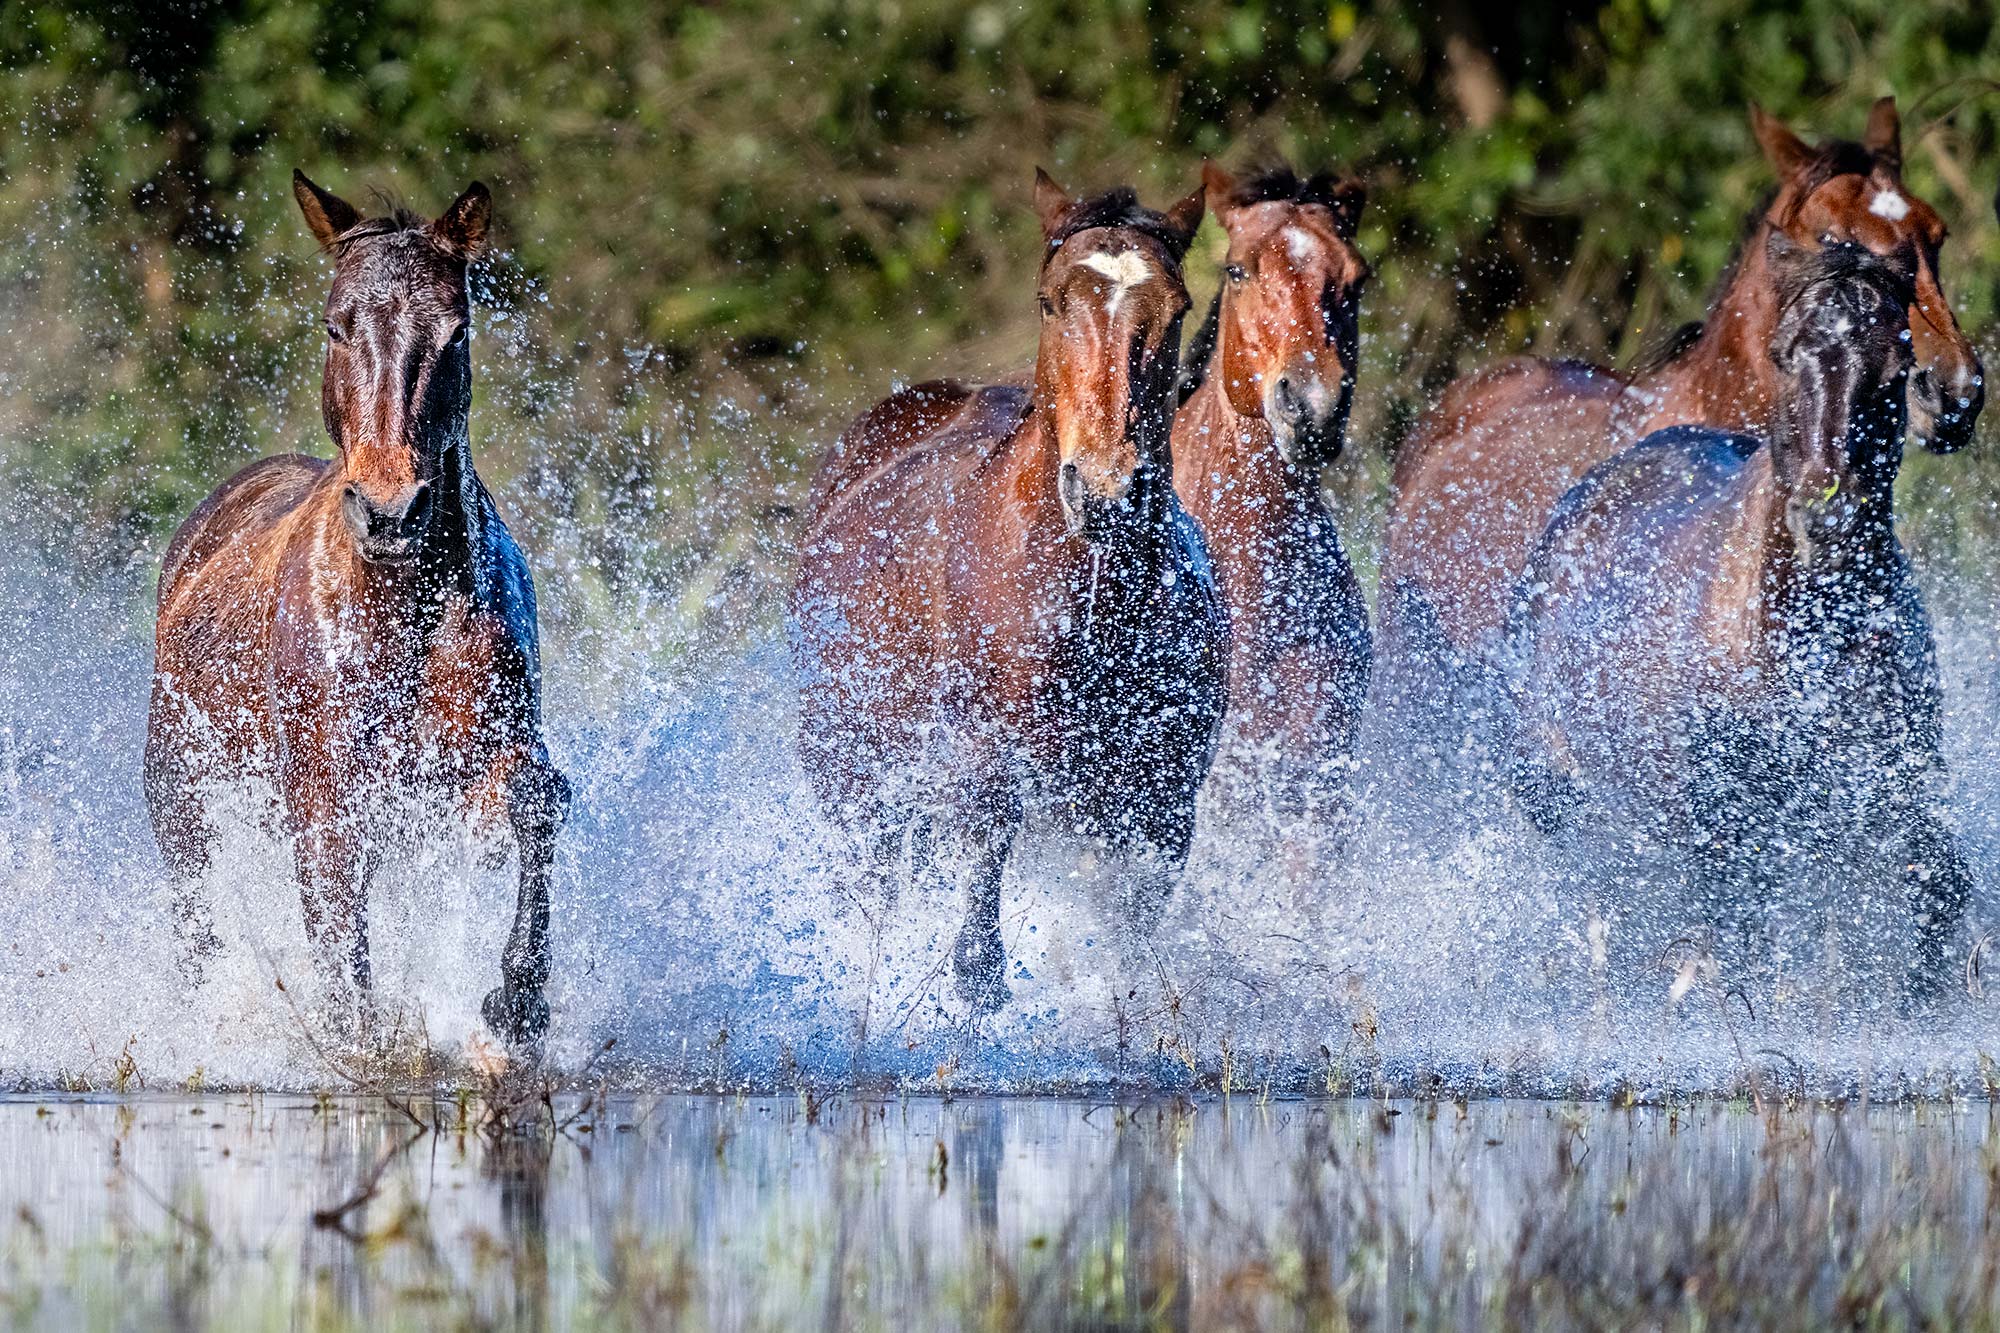 Pantanal-Pferde fotografiert von Benny Rebel auf einer Fotoreise durch Brasilien.